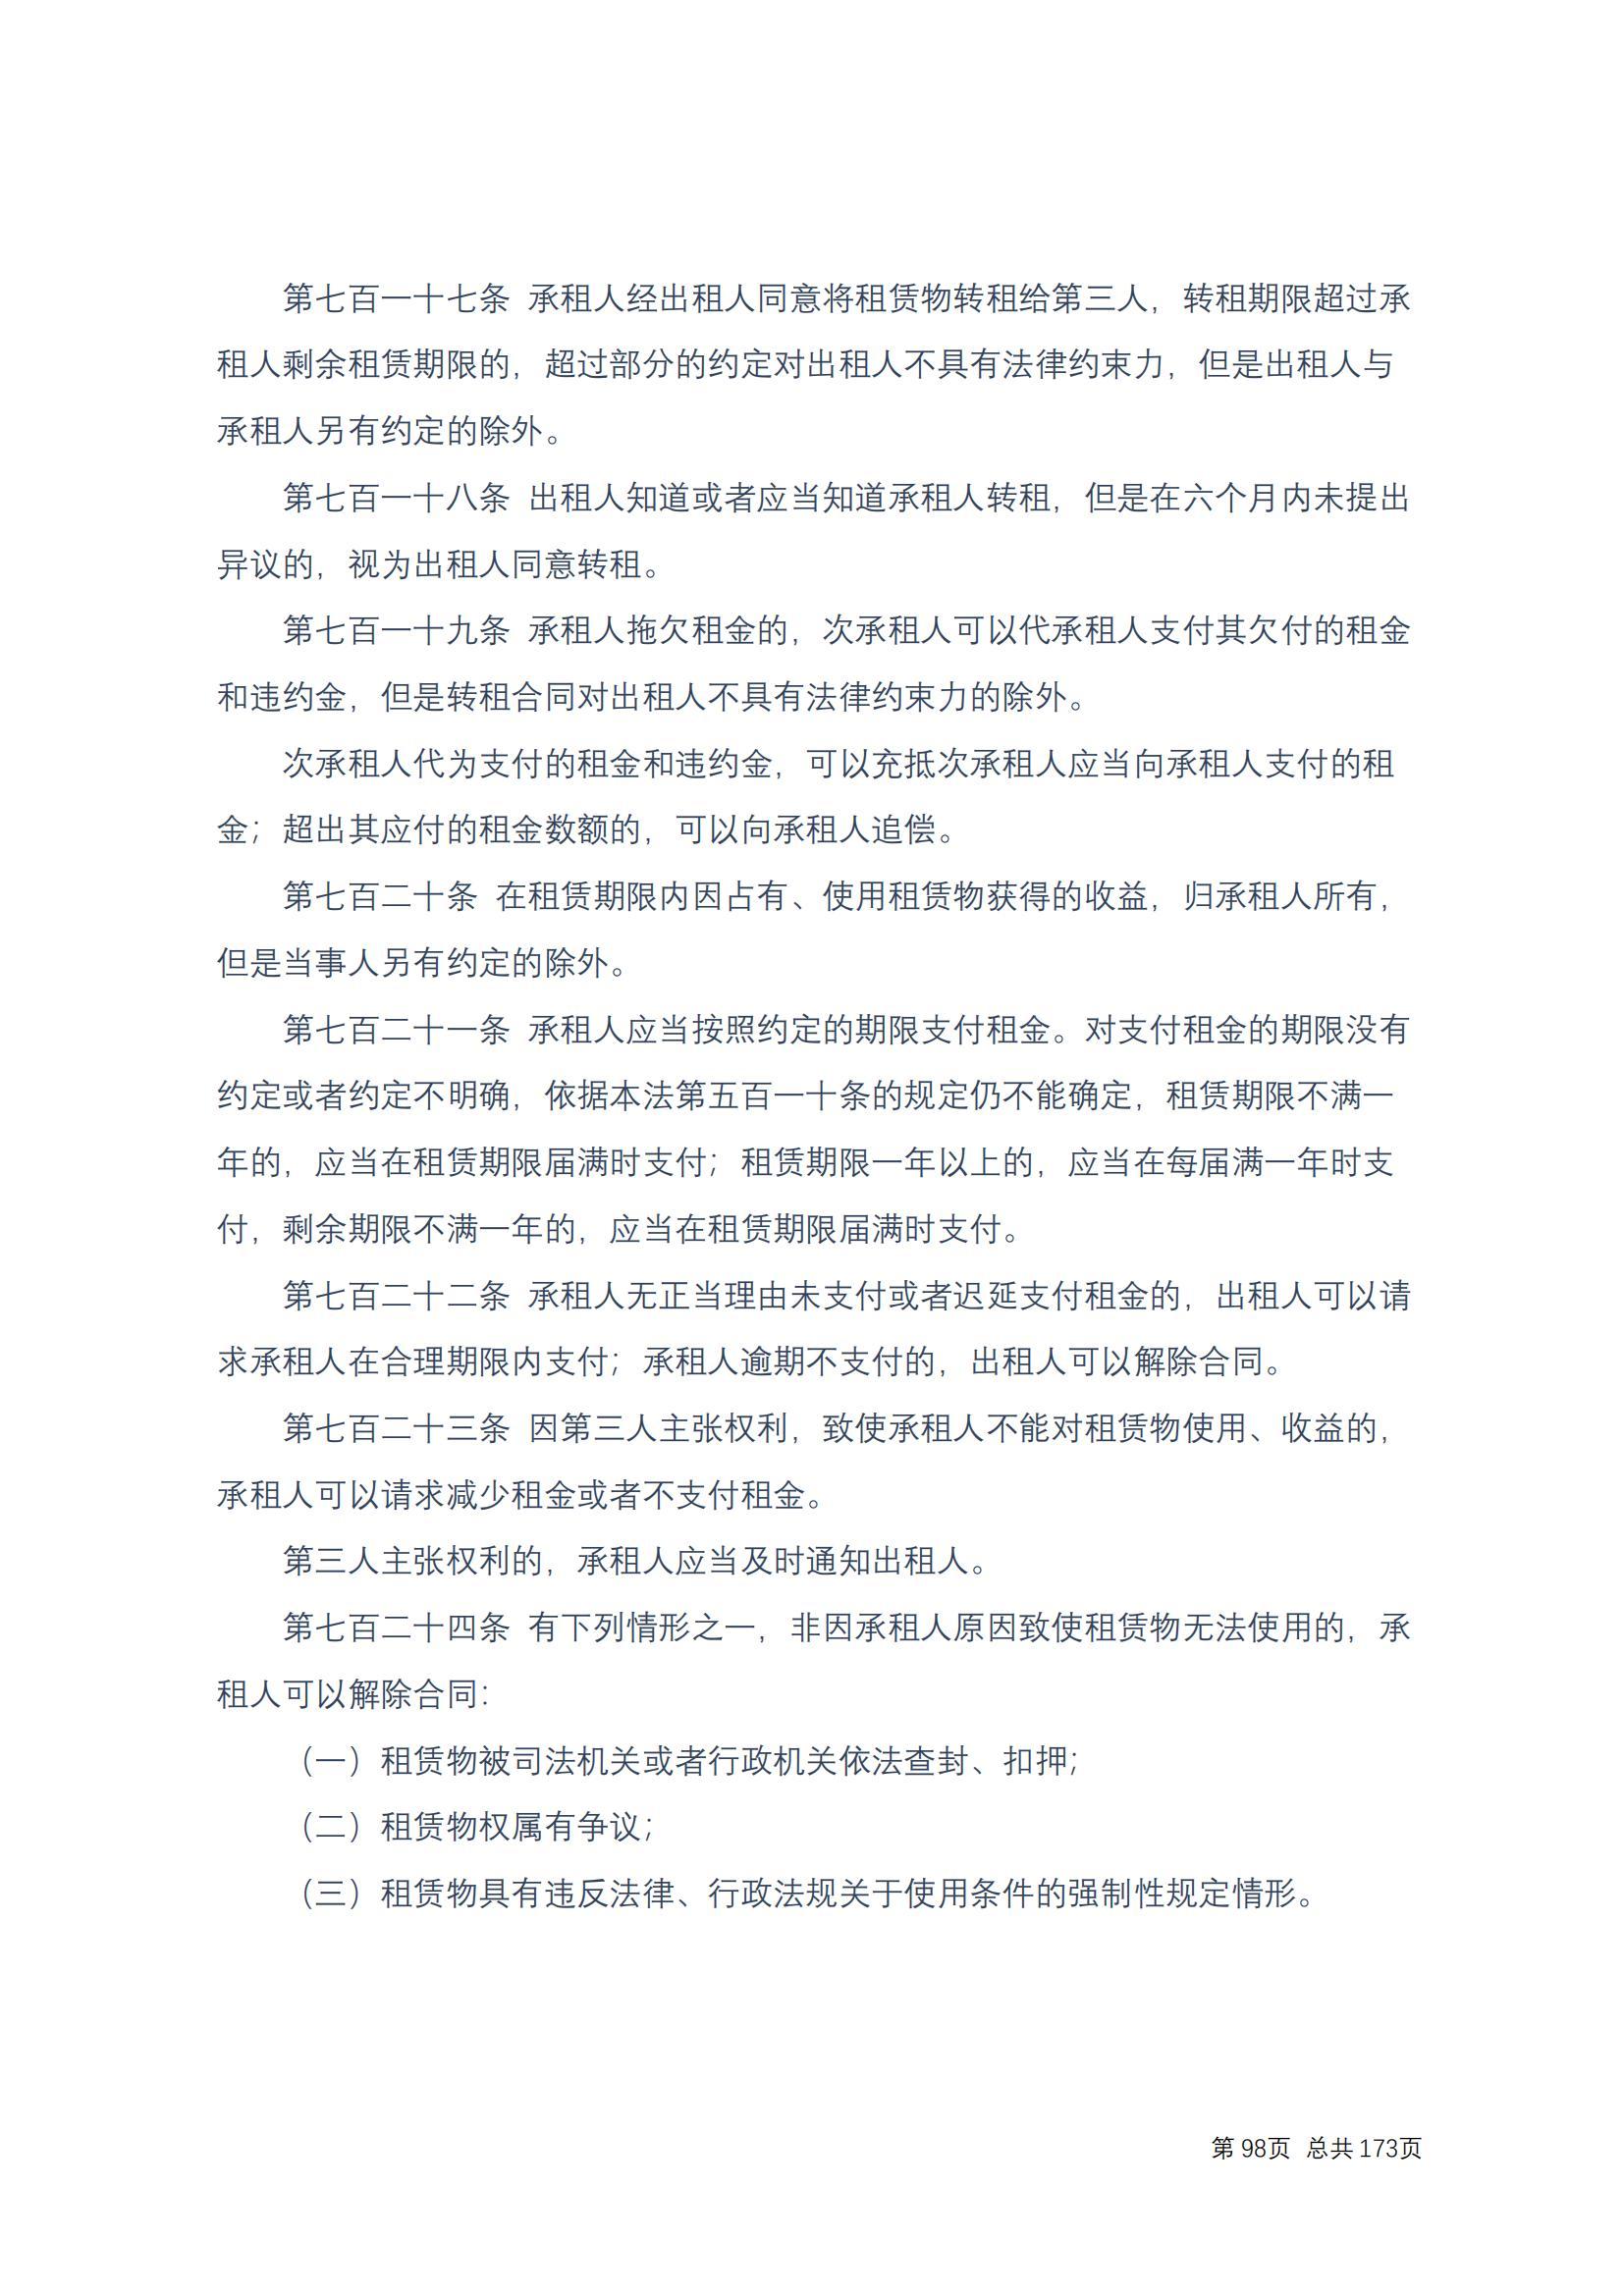 中华人民共和国民法典 修改过_97